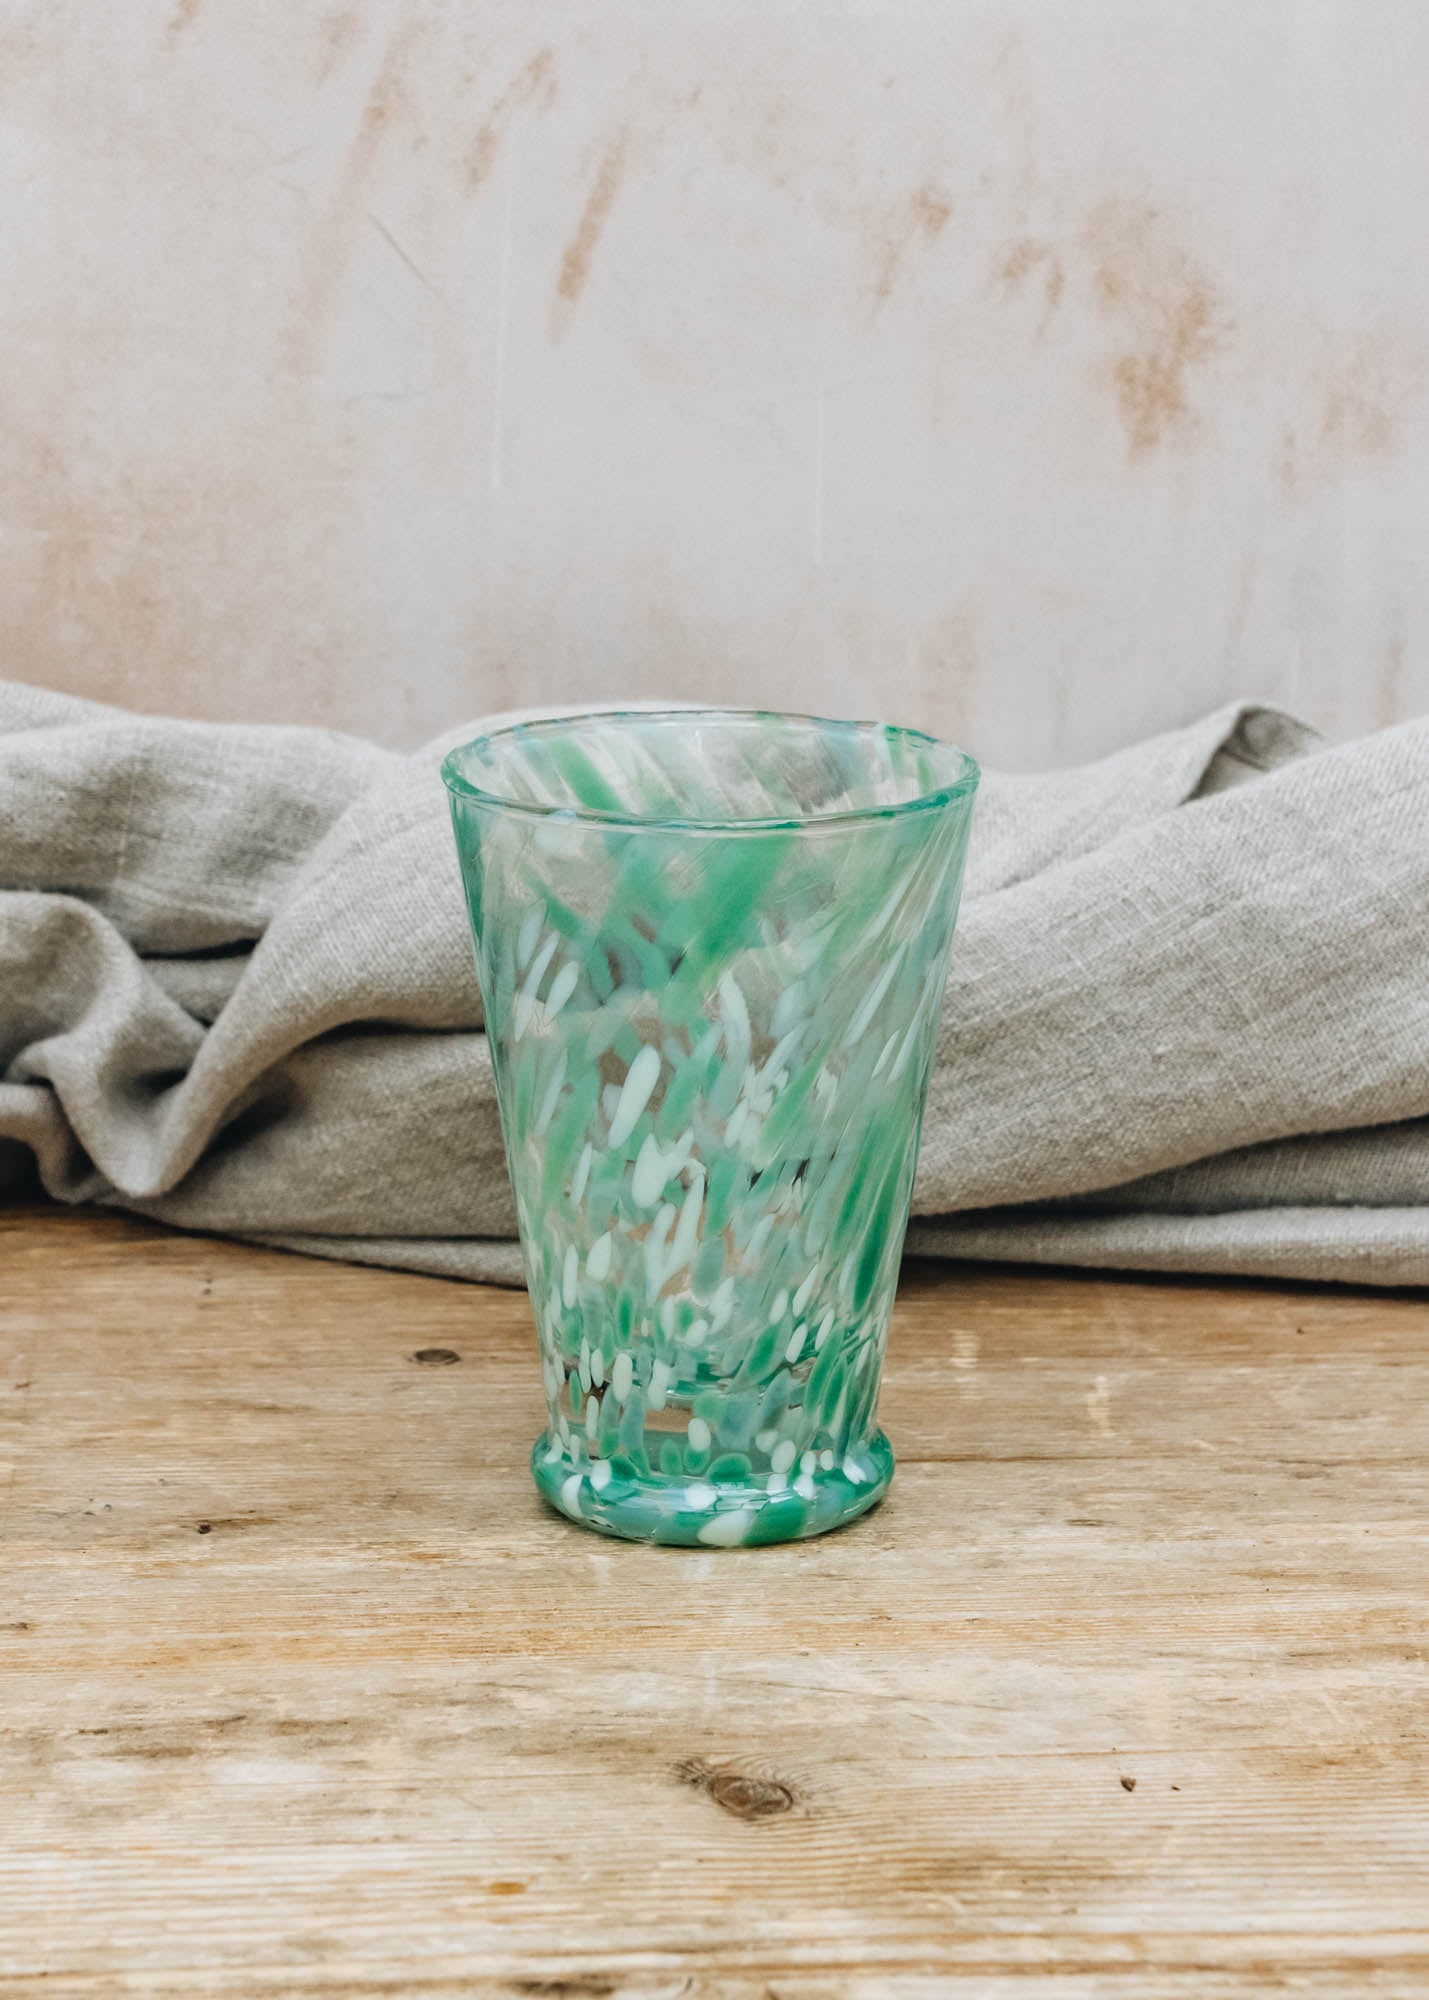 Van Verre Murano Glass in Light Green